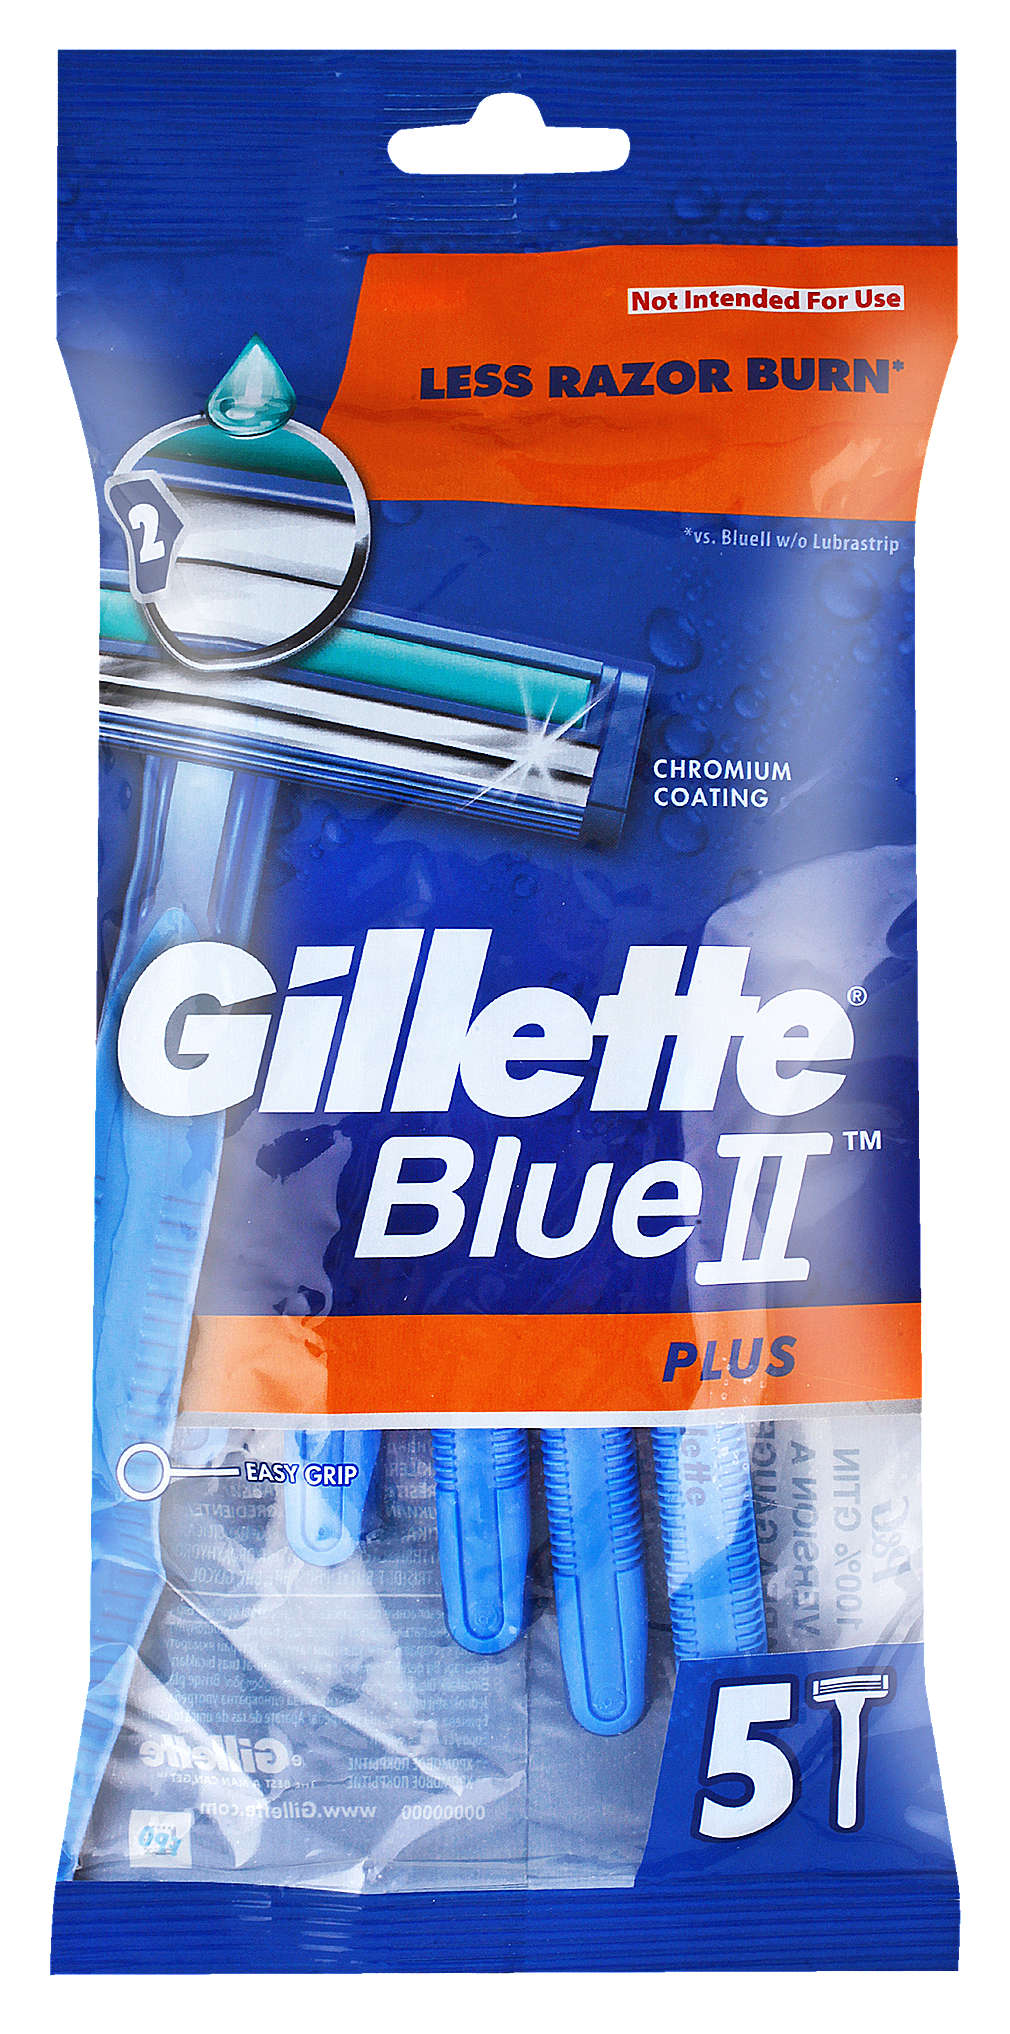 Fotografija ponude Gillette Jednokratni brijač